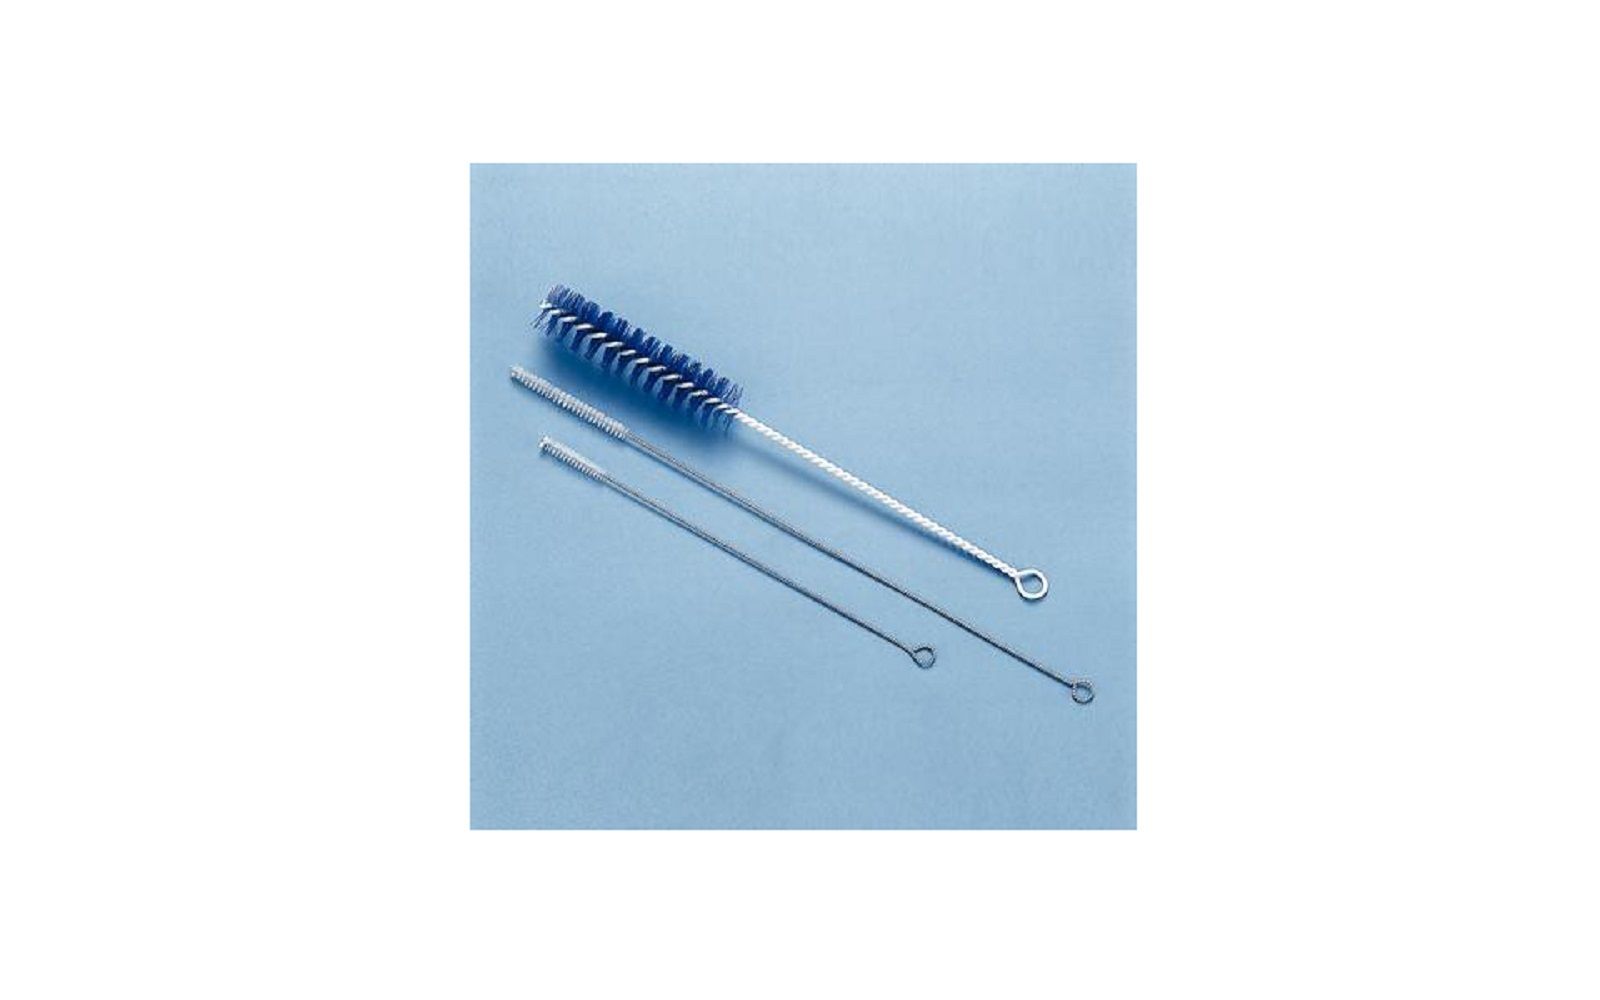 Polycleaner brushes for small aspirator tips, 6/pkg